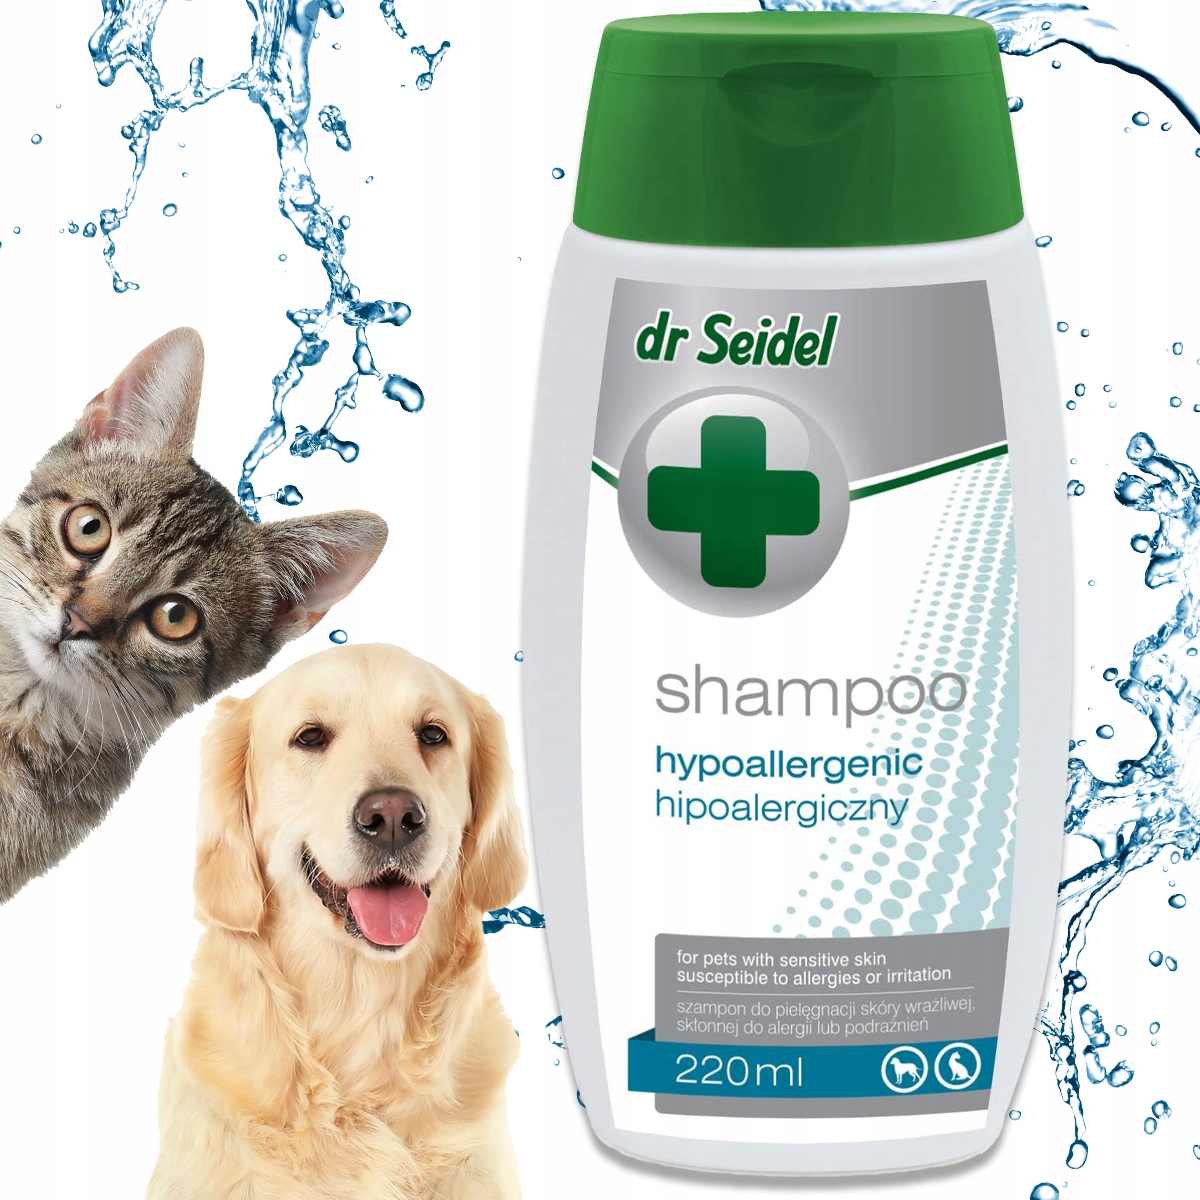 szampon dla kotów zmniejszający alergie